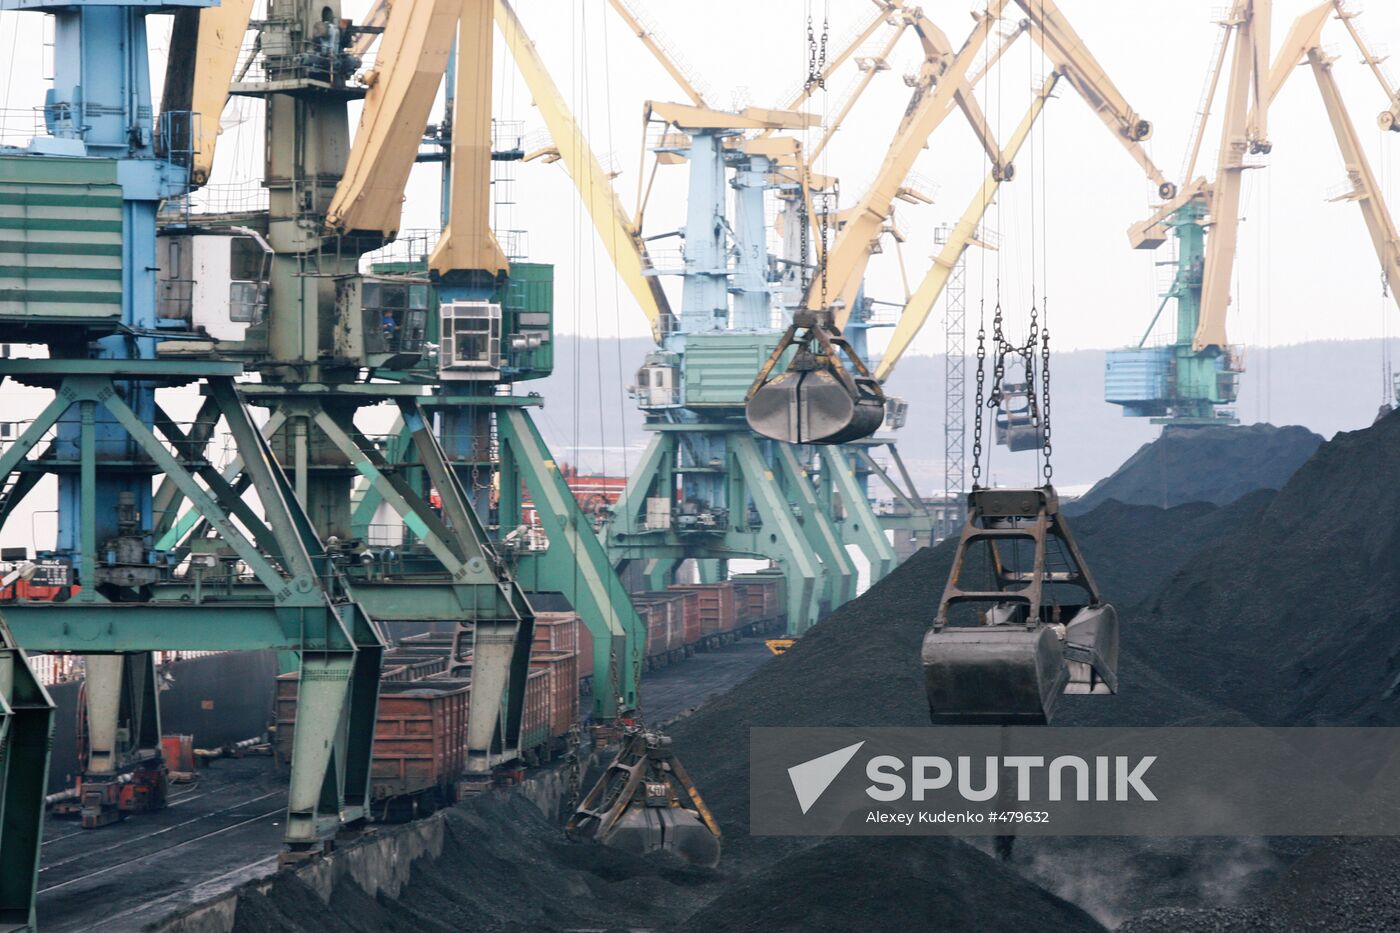 Murmansk Commercial Seaport